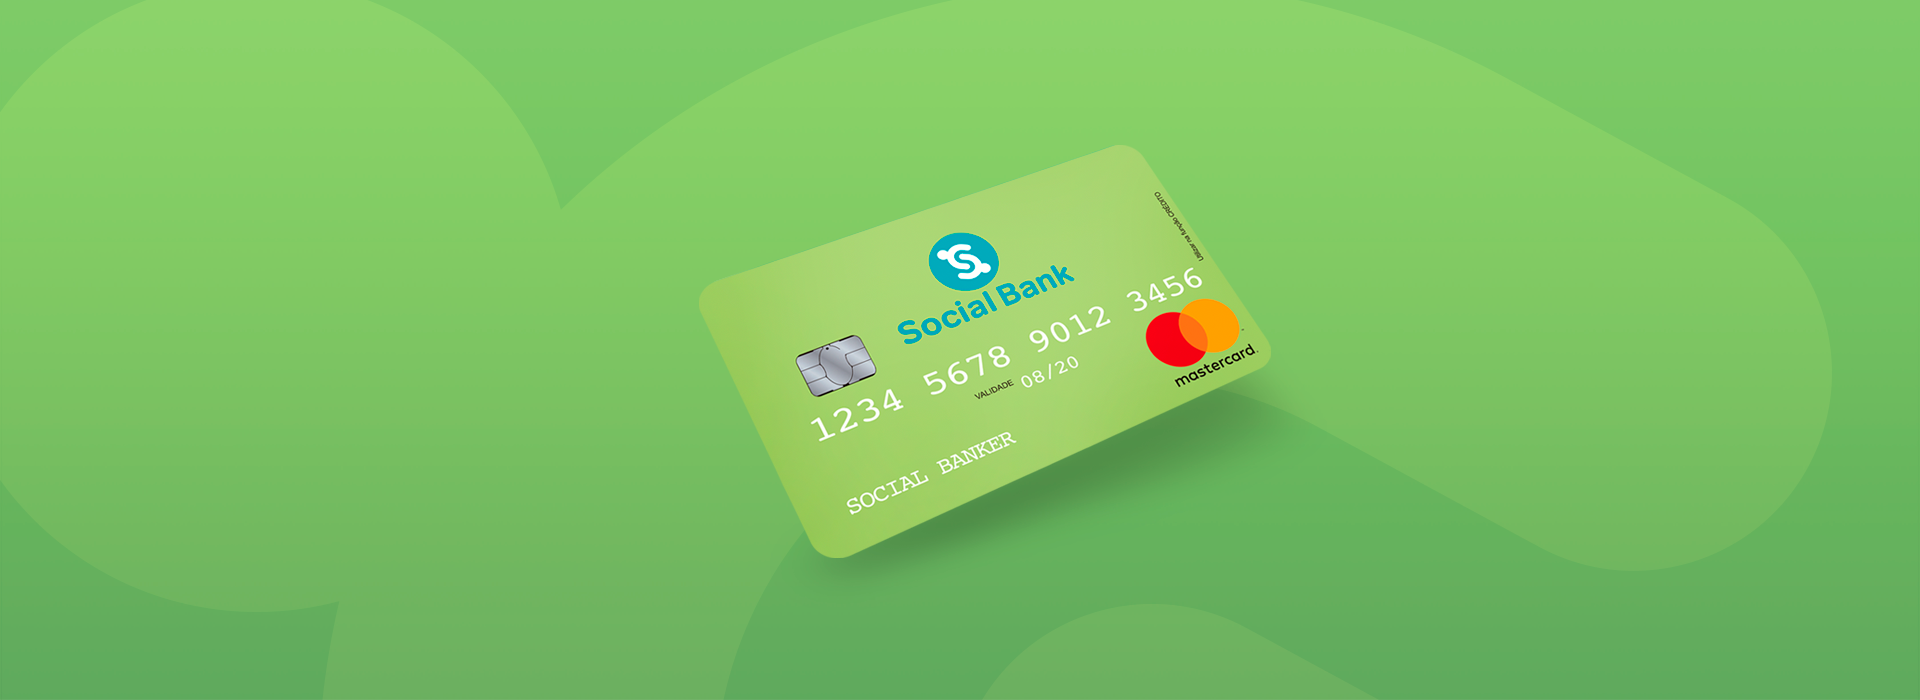 Social Bank: Empréstimo, Cartão e Conta Digital 1